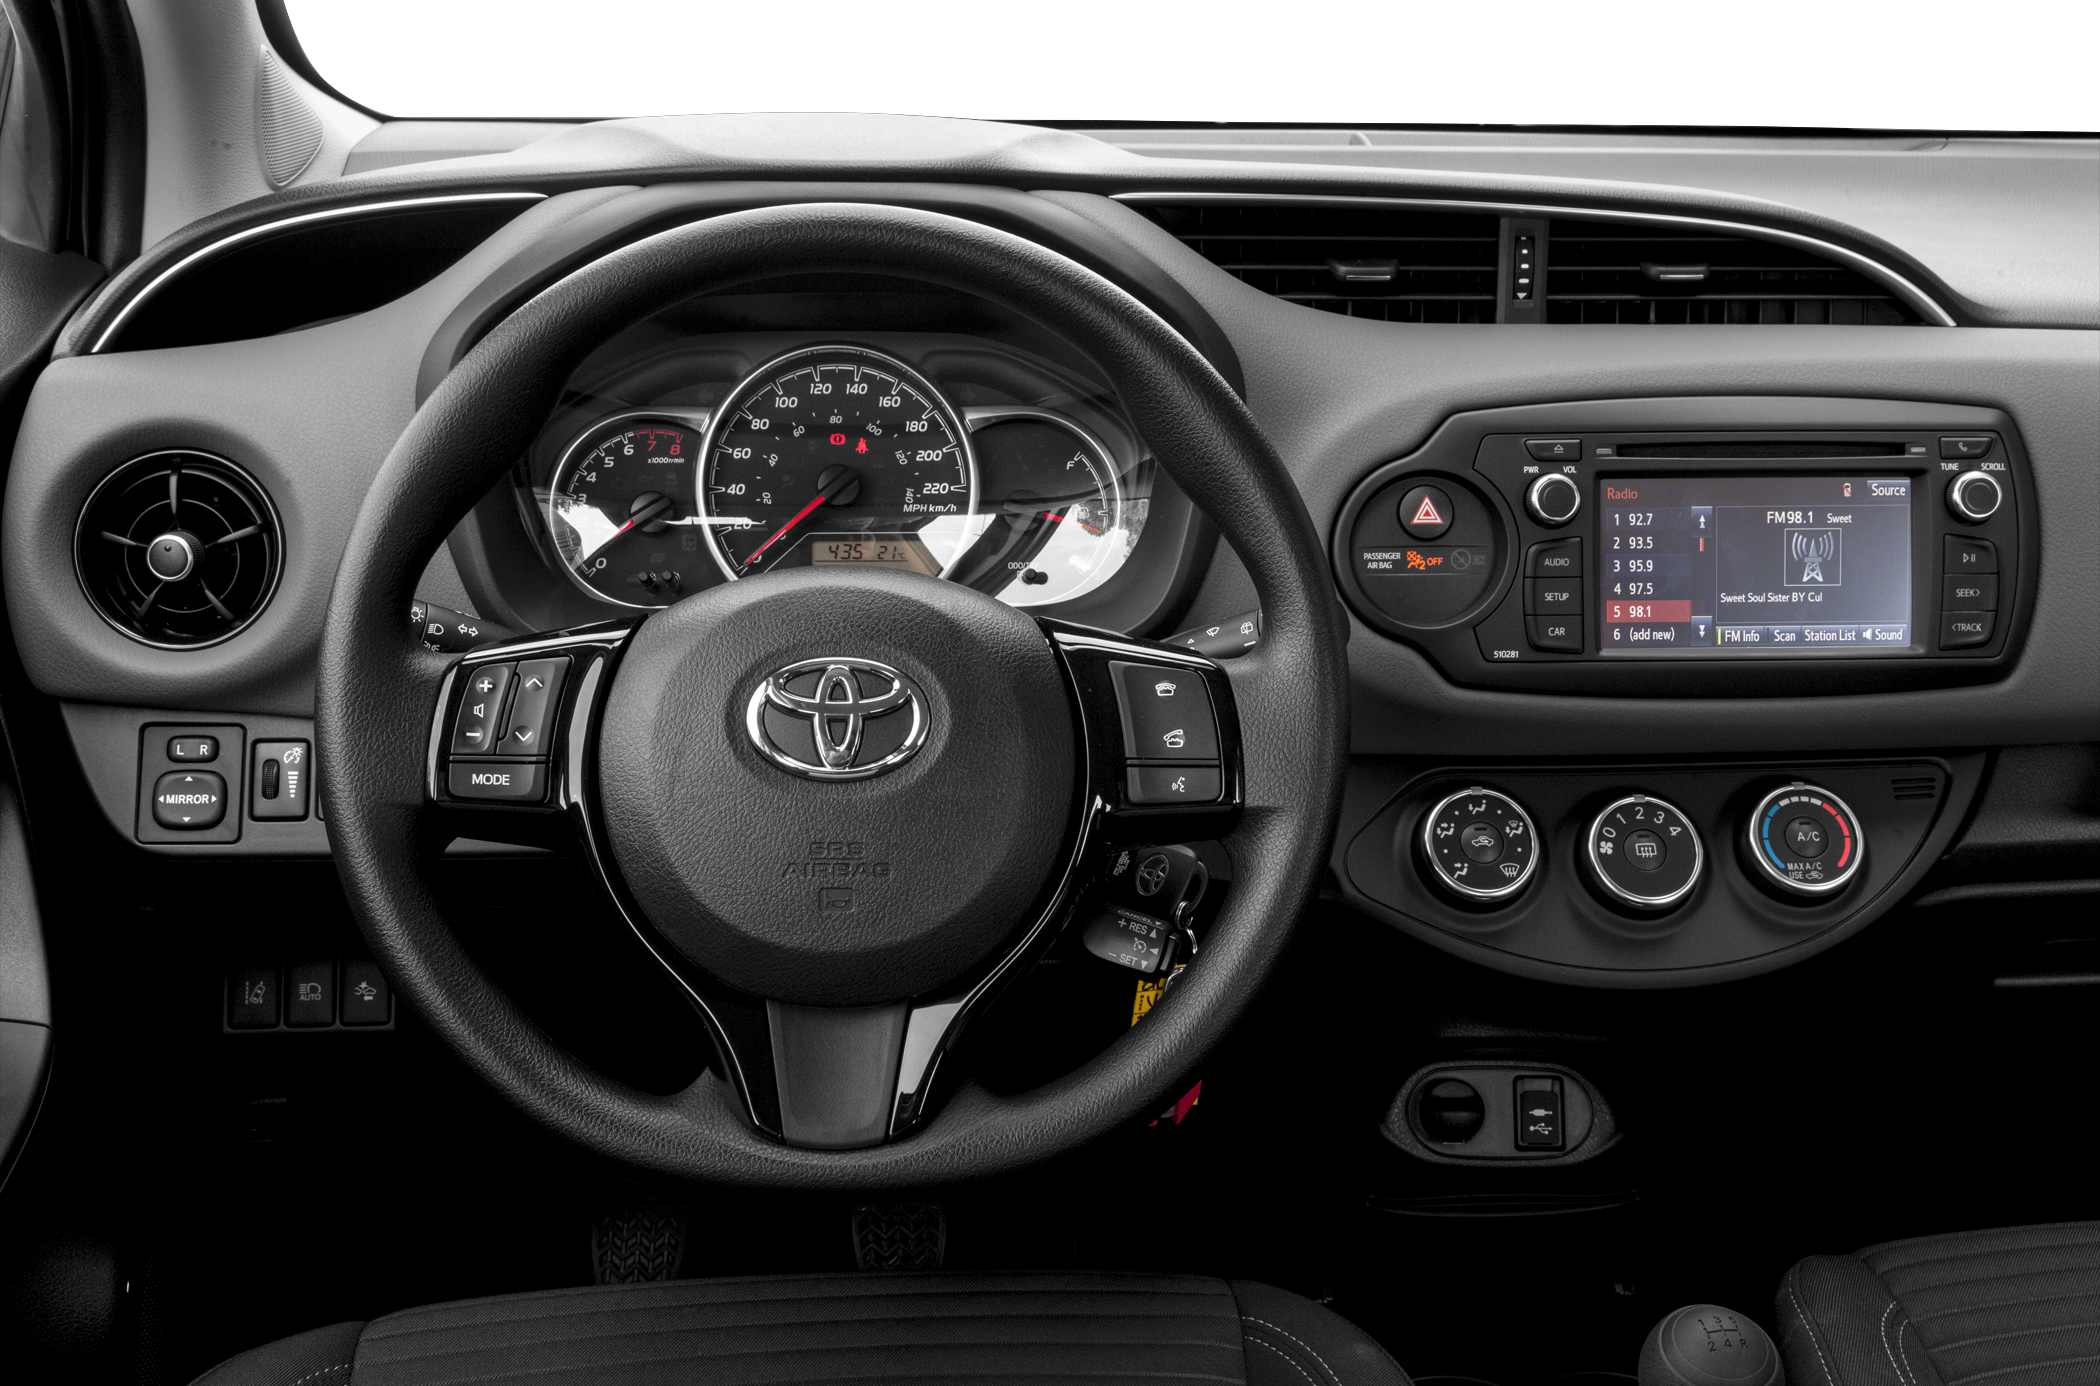 Khoang lái nội thất xe Toyota Yaris 2020